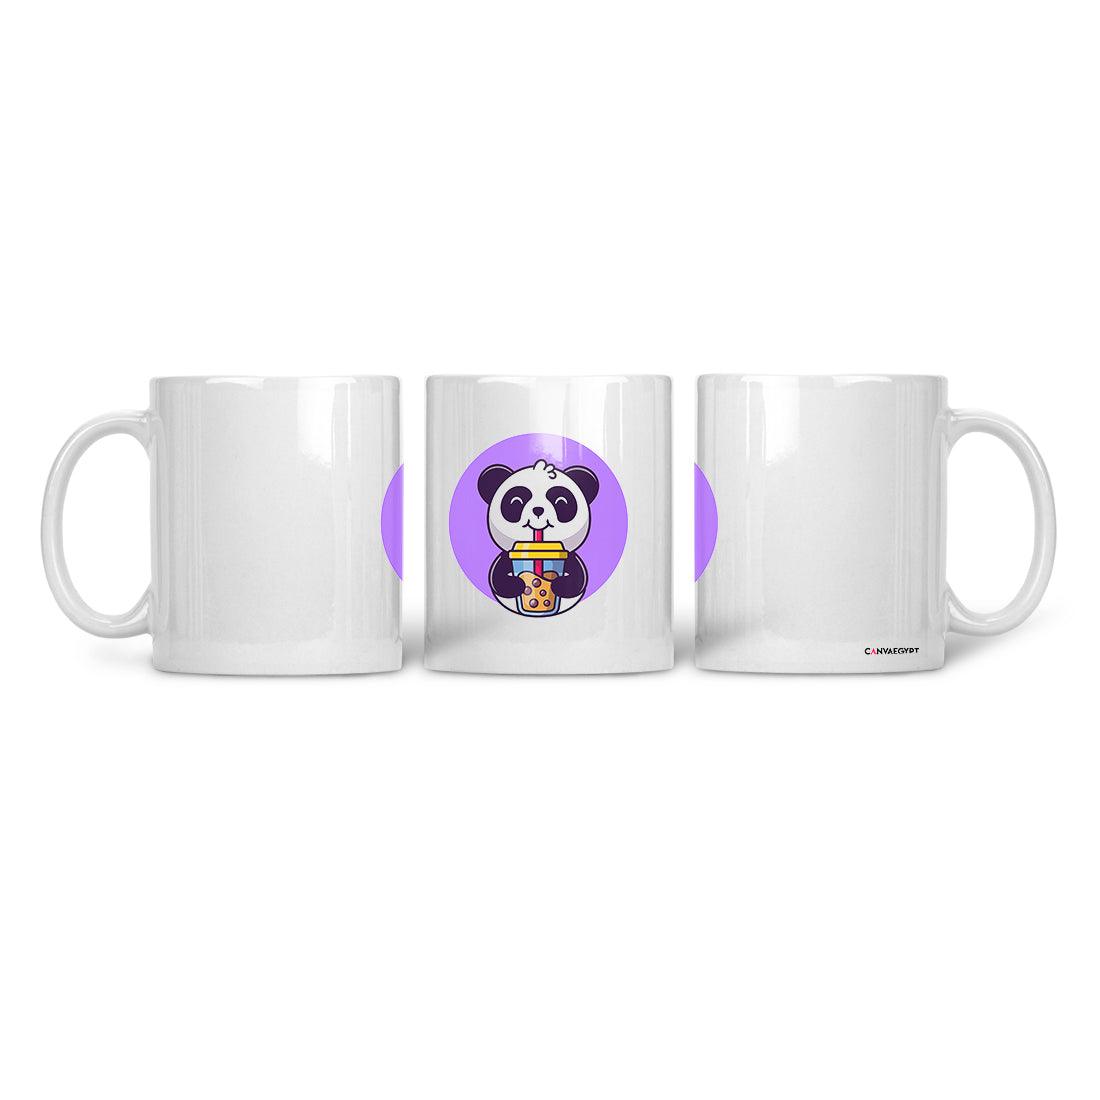 Ceramic Mug Drinking Panda - CANVAEGYPT